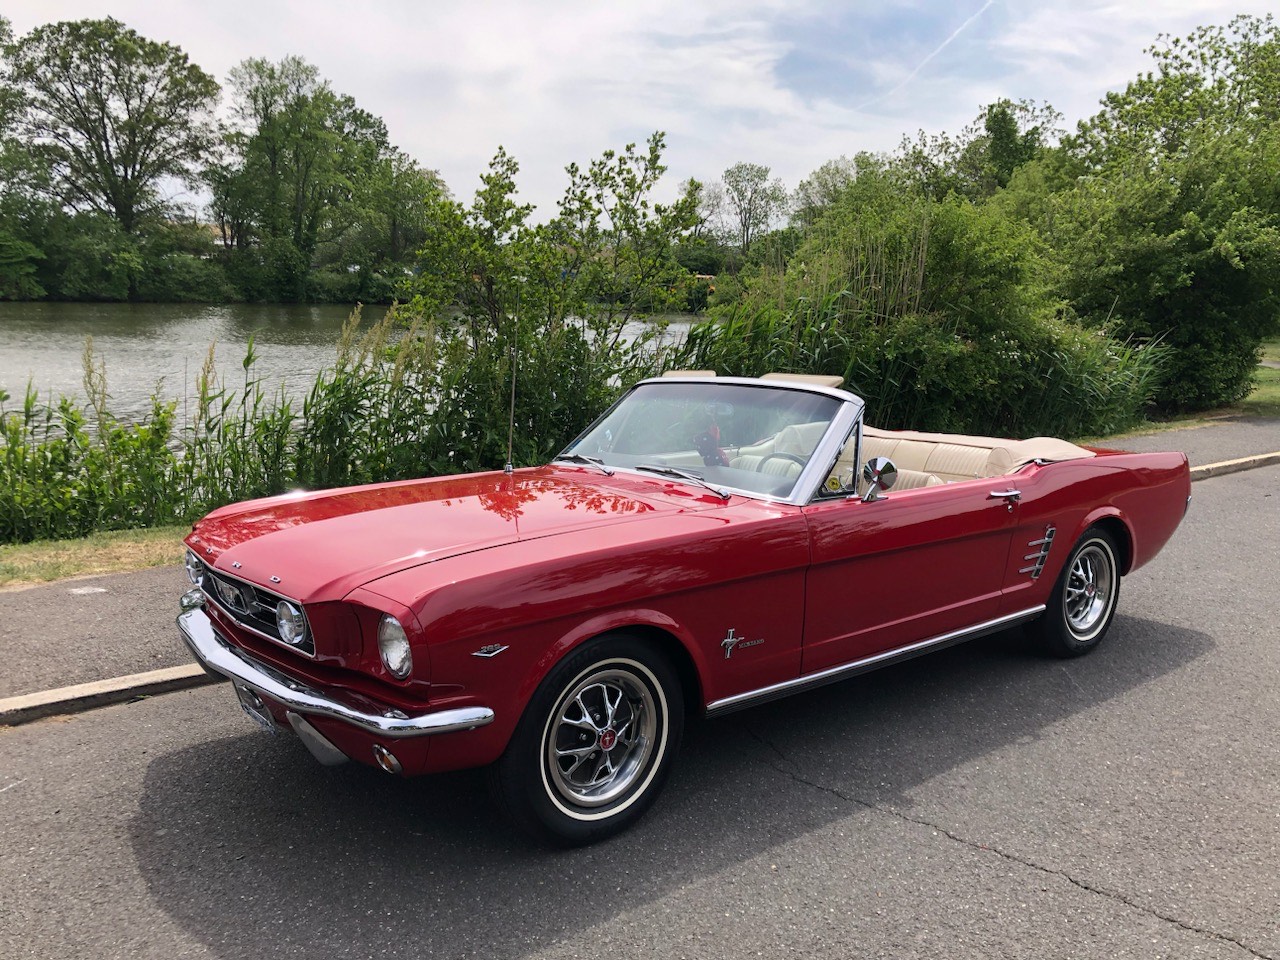 1960's Mustang